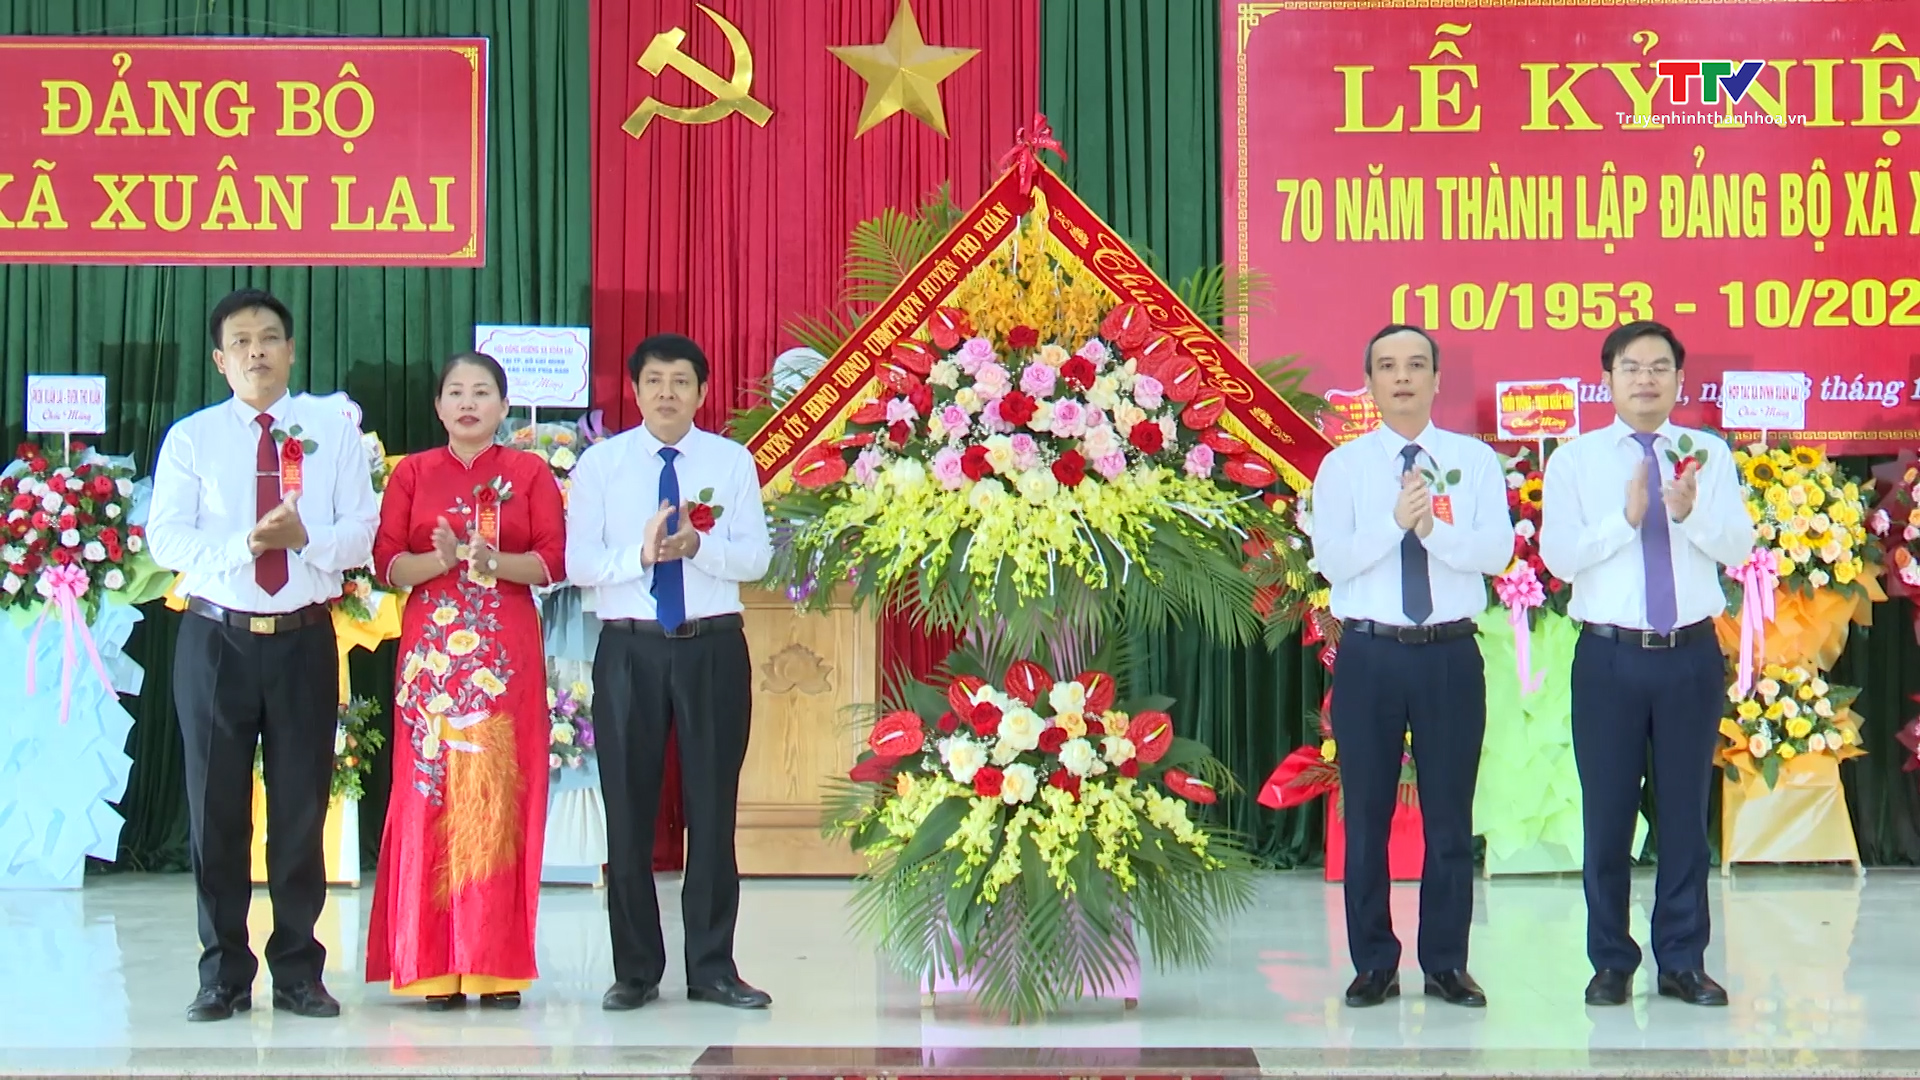 Đảng bộ xã Xuân Lai kỷ niệm 70 năm ngày thành lập - Ảnh 2.